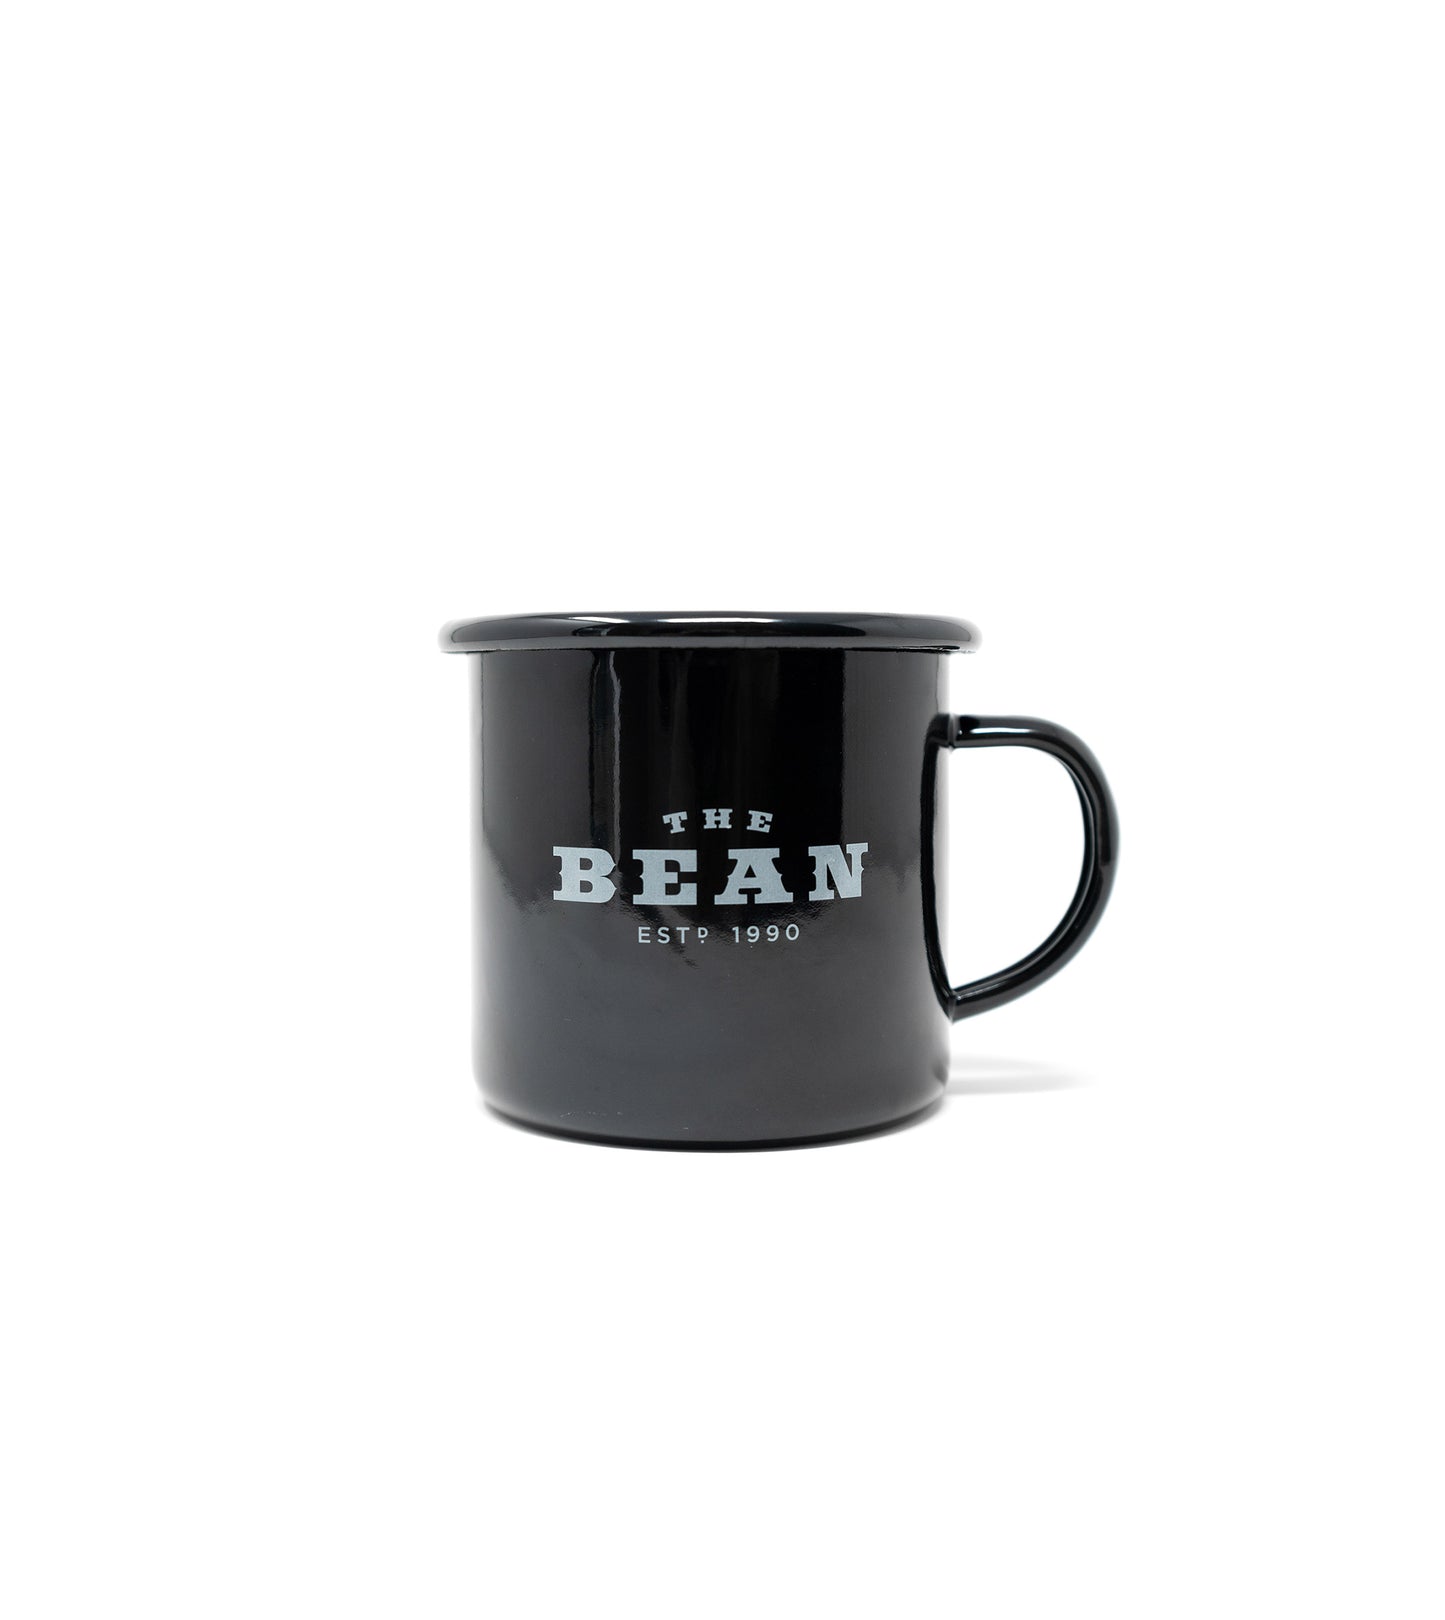 Bean Camp Cup